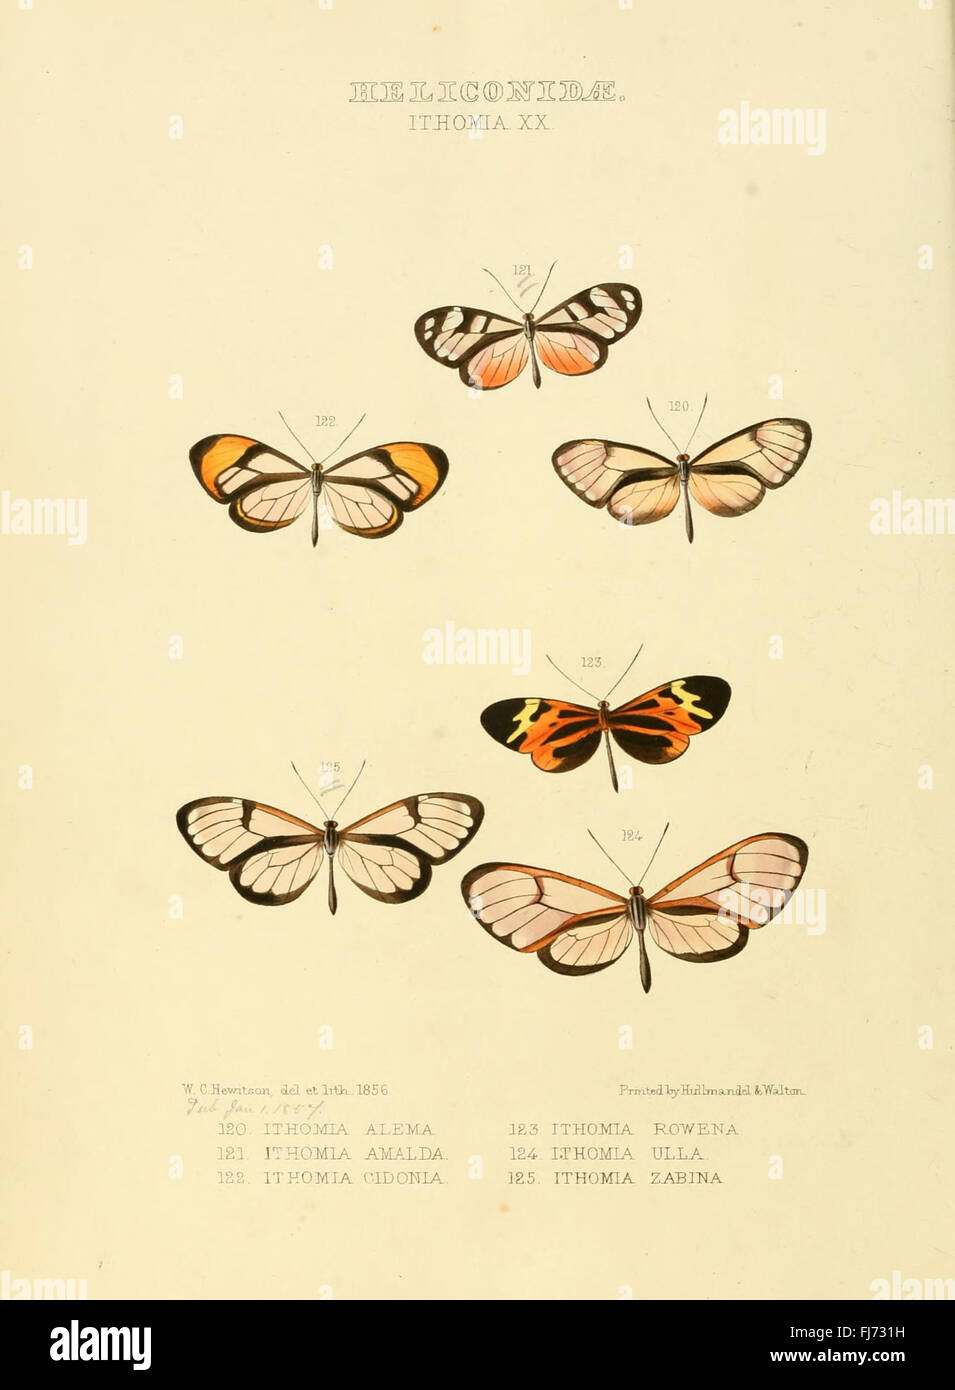 Illustrazioni di nuove specie di farfalle esotiche (Heliconidae- Ithomia XX) Foto Stock